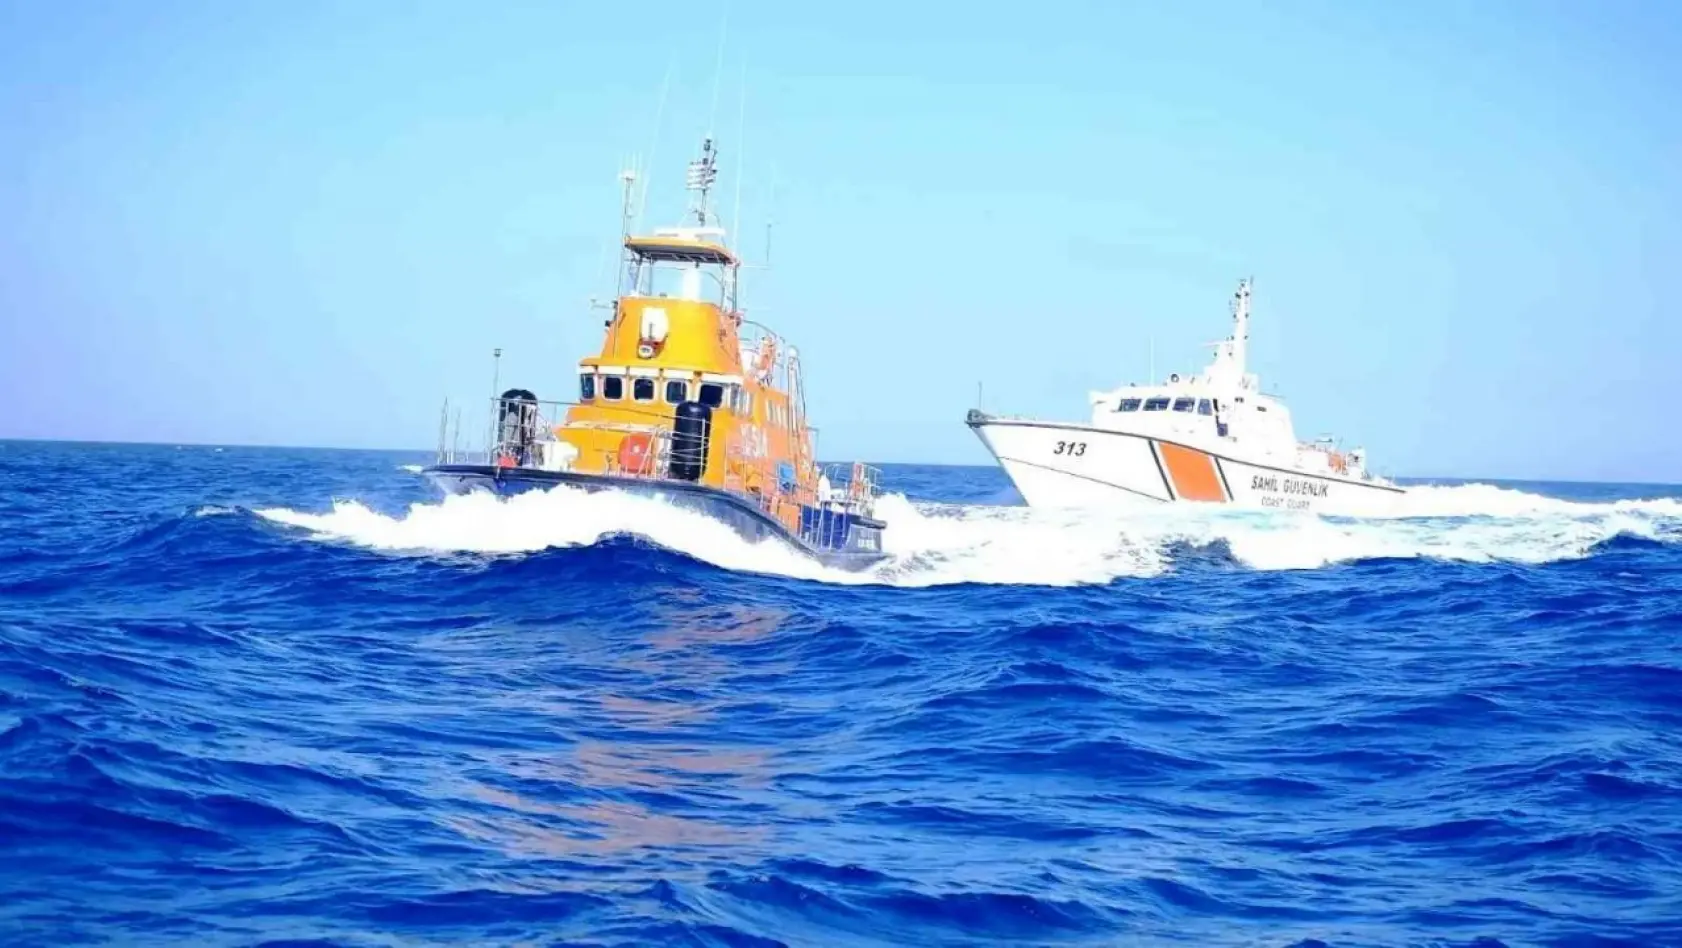 Yunan Sahil Güvenliği, yelkenli tekneyi taciz etti, Türk askeri 'rotanızı değiştirmeyin, tam yol ileri' dedi